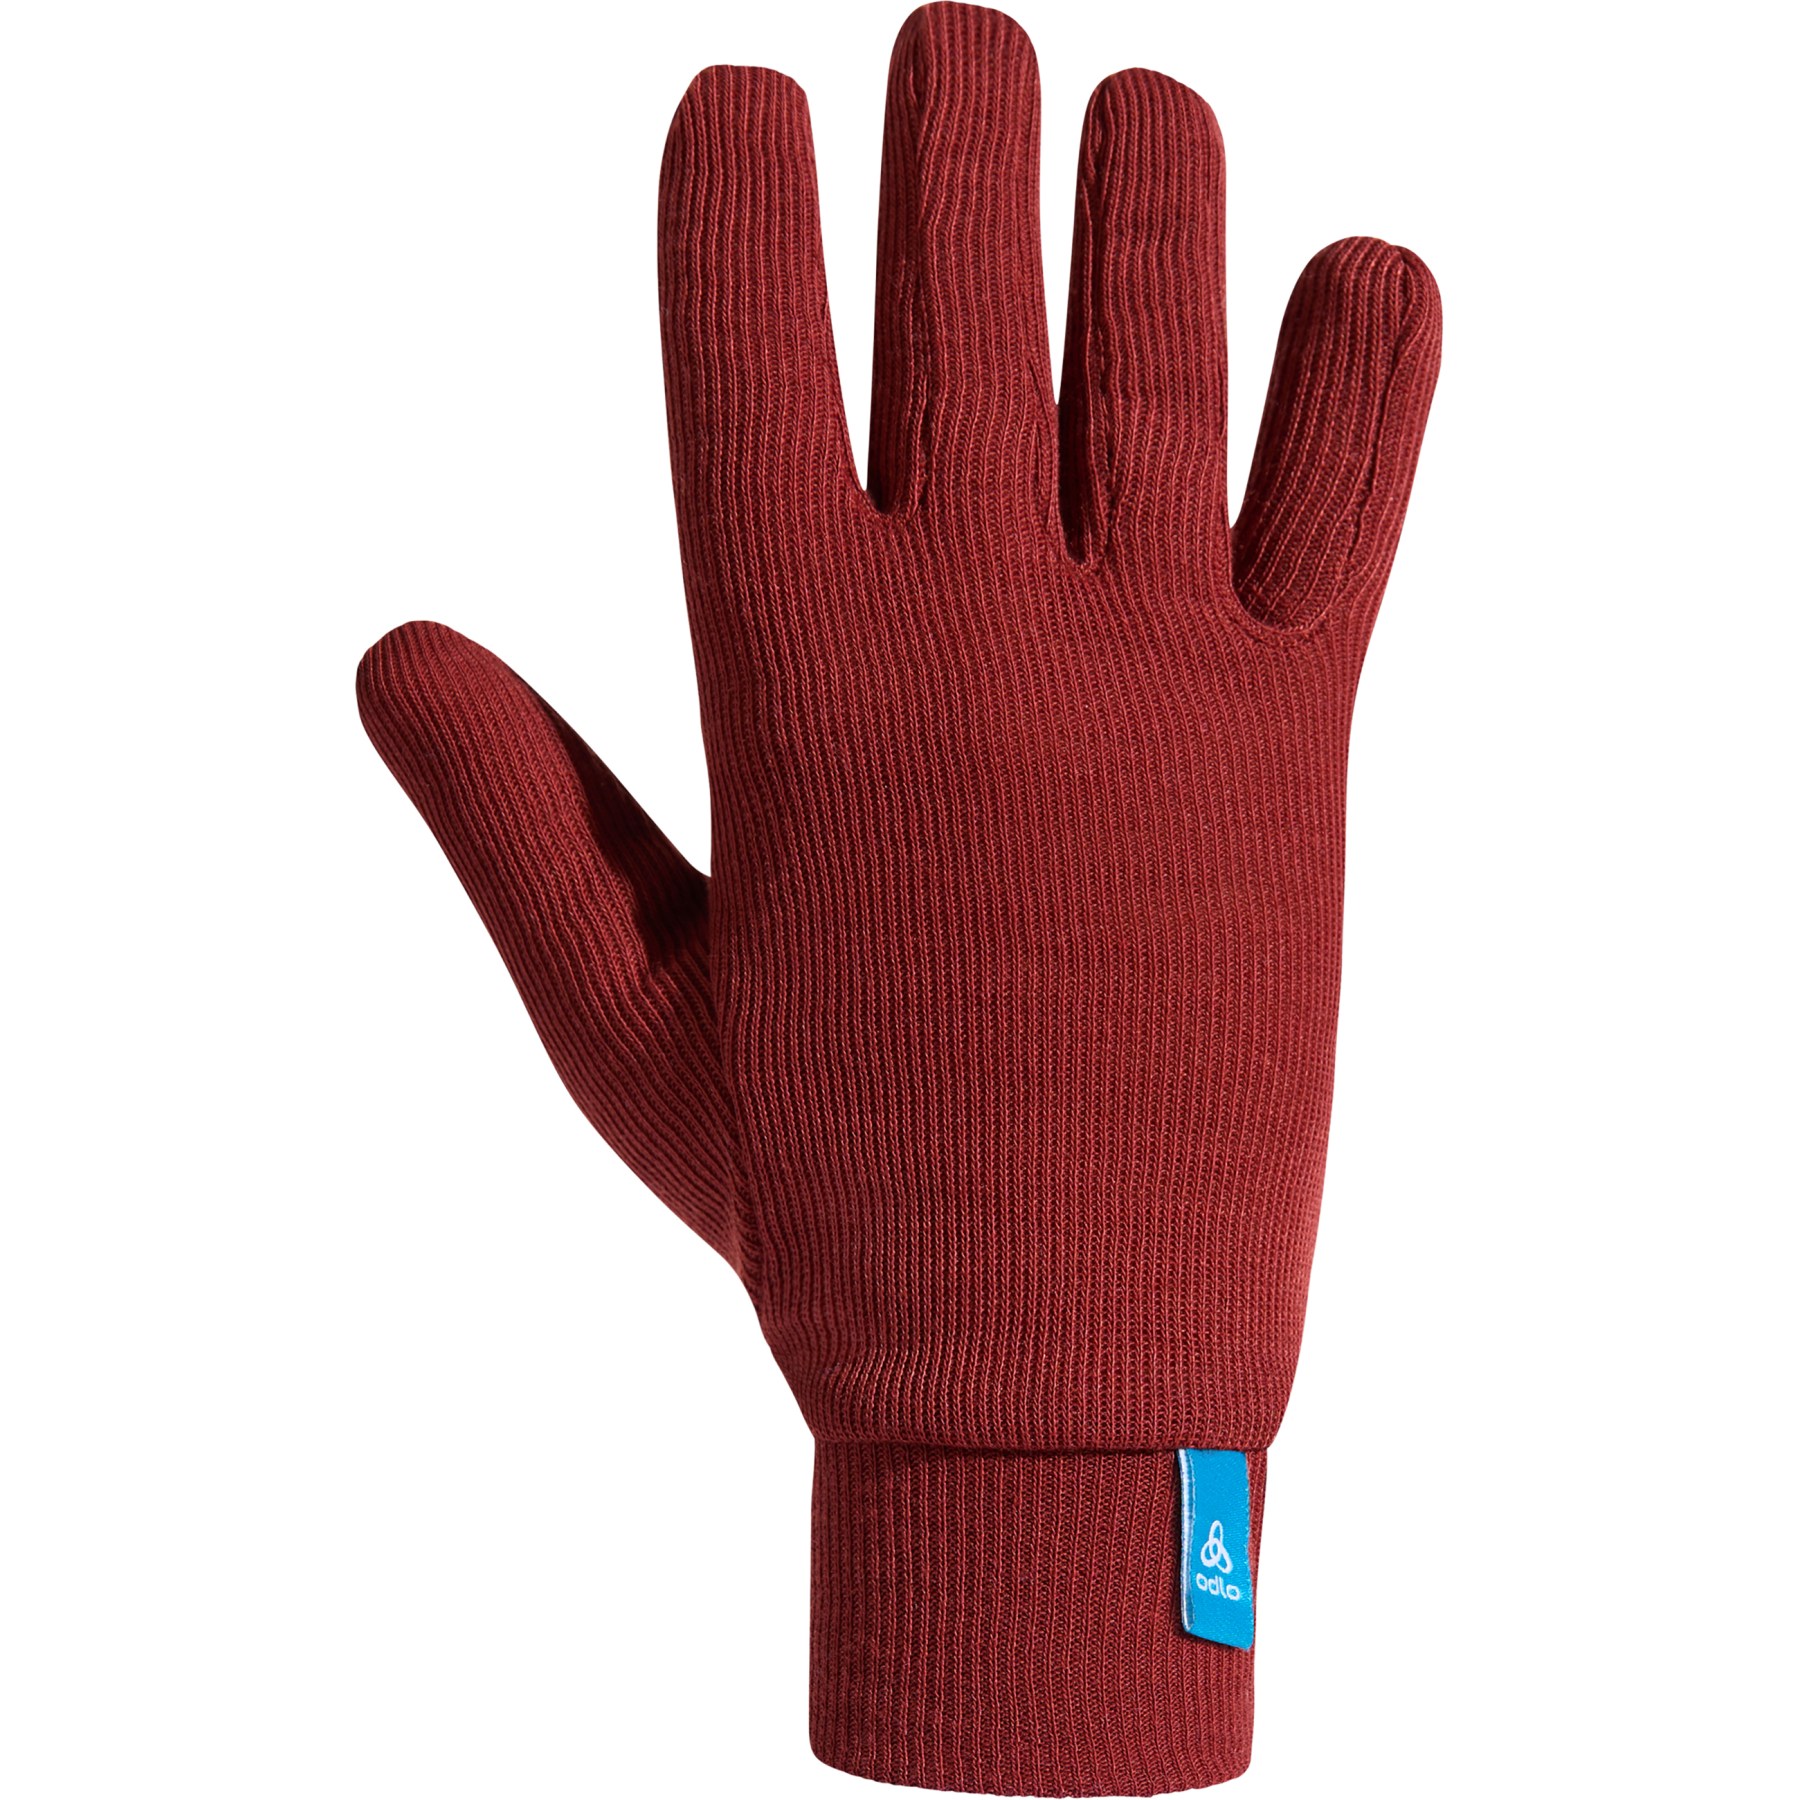 Productfoto van Odlo Active Warm Handschoenen Kinderen - spiced apple